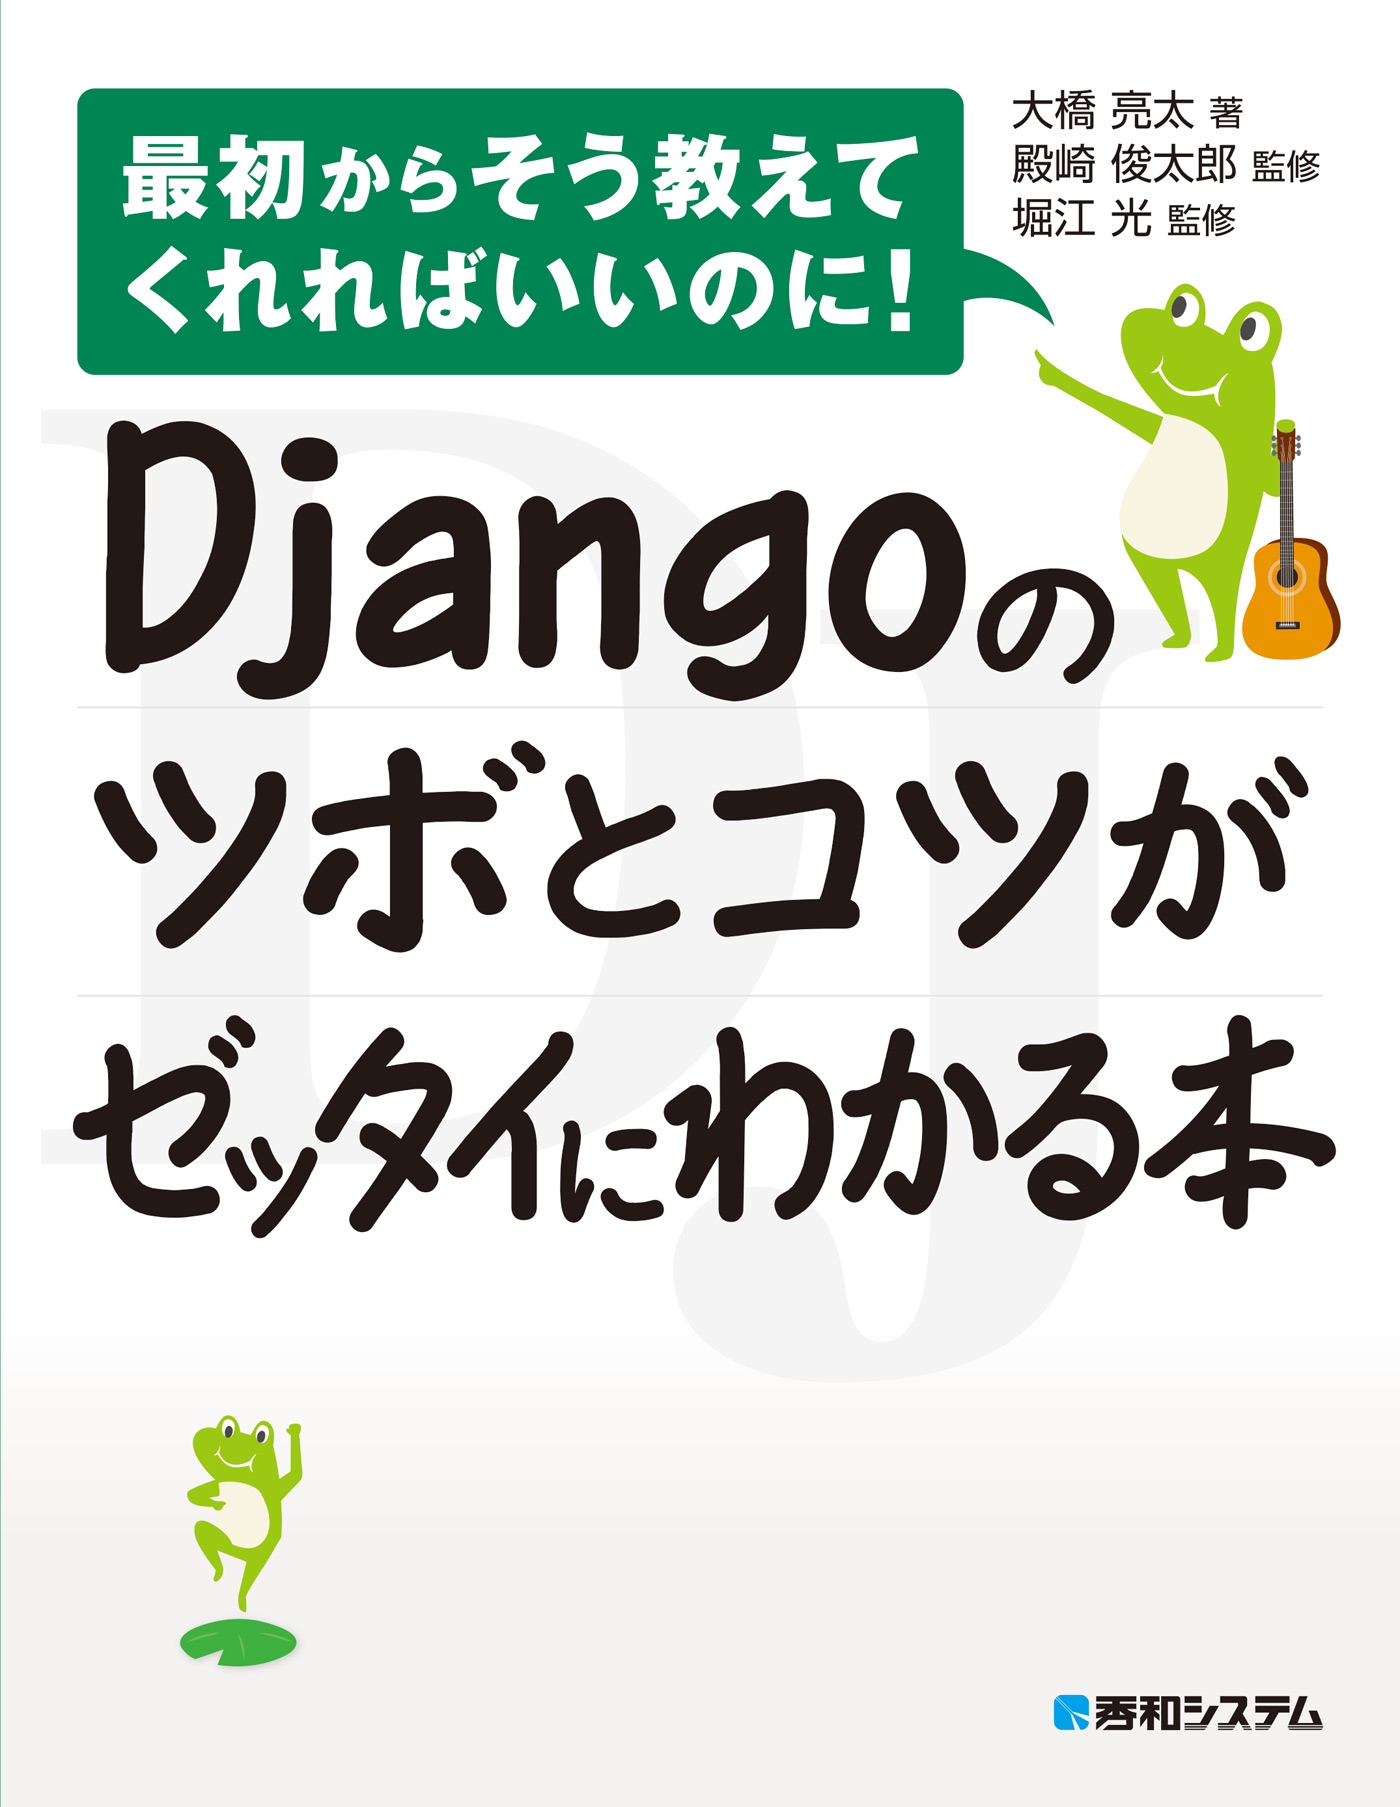 Djangoのツボとコツがゼッタイにわかる本 - 大橋亮太/殿崎俊太郎